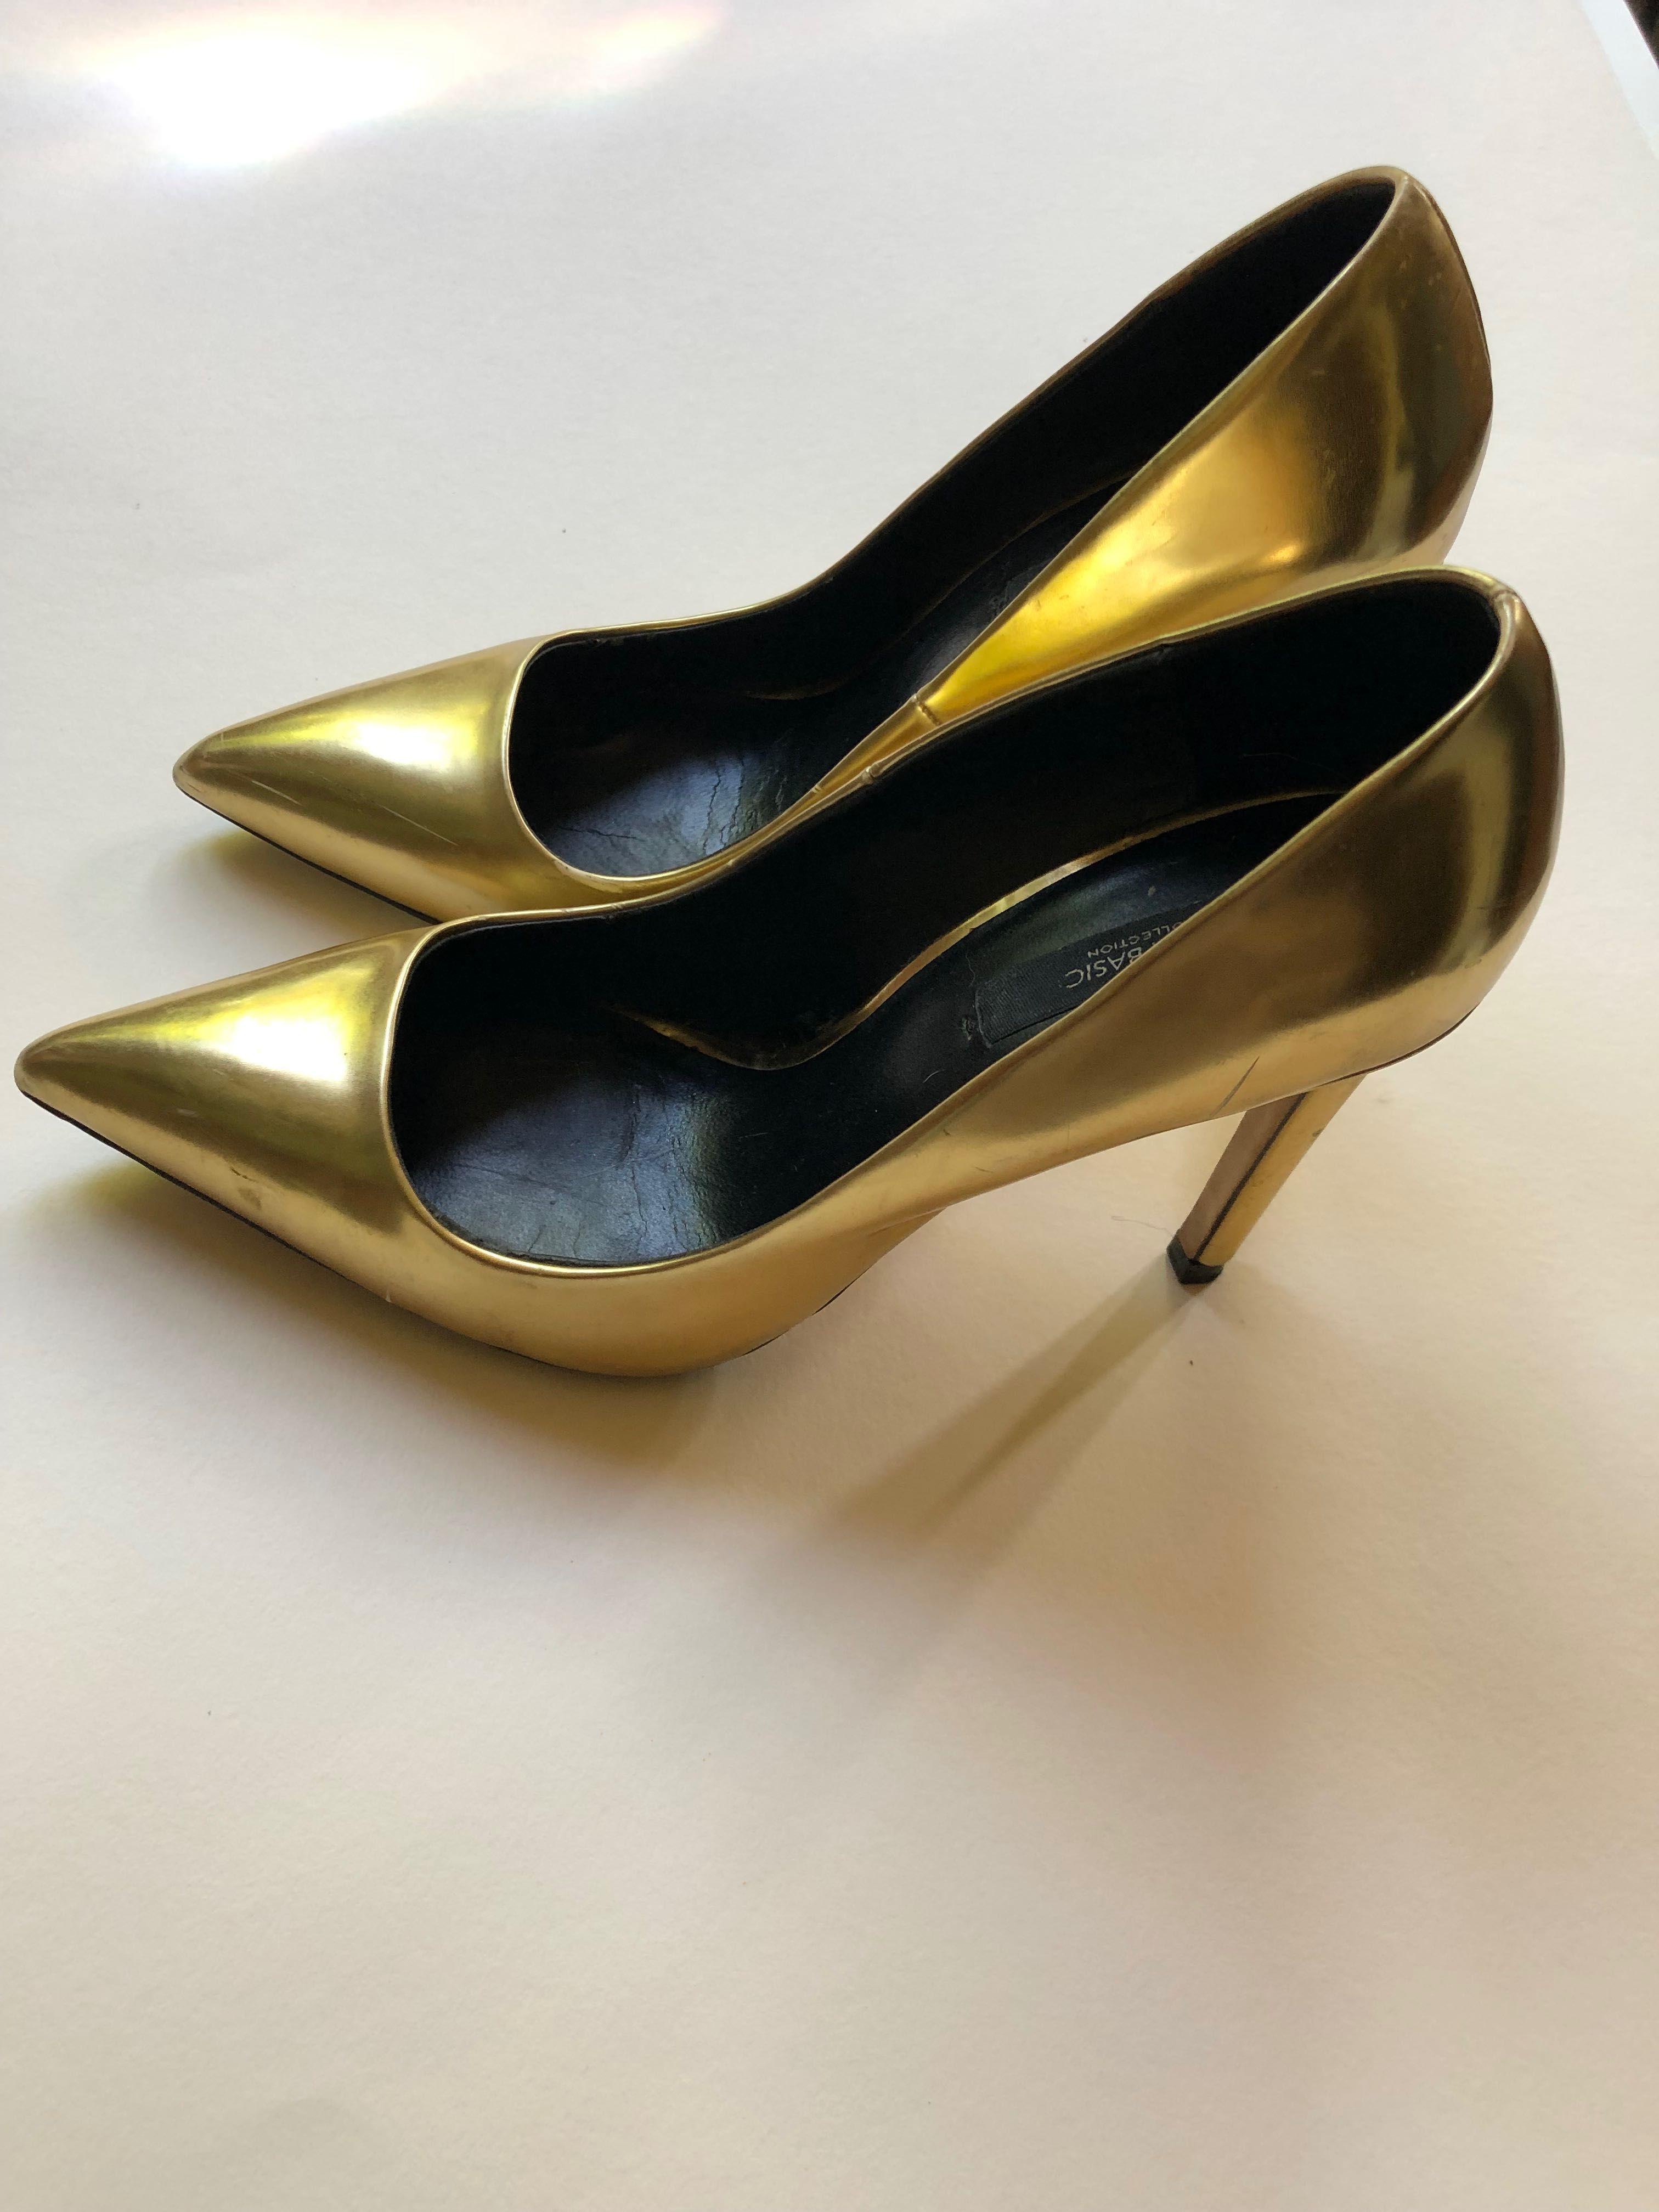 Золотые туфли на высоком узком каблучке с острым носиком фирмы Zara